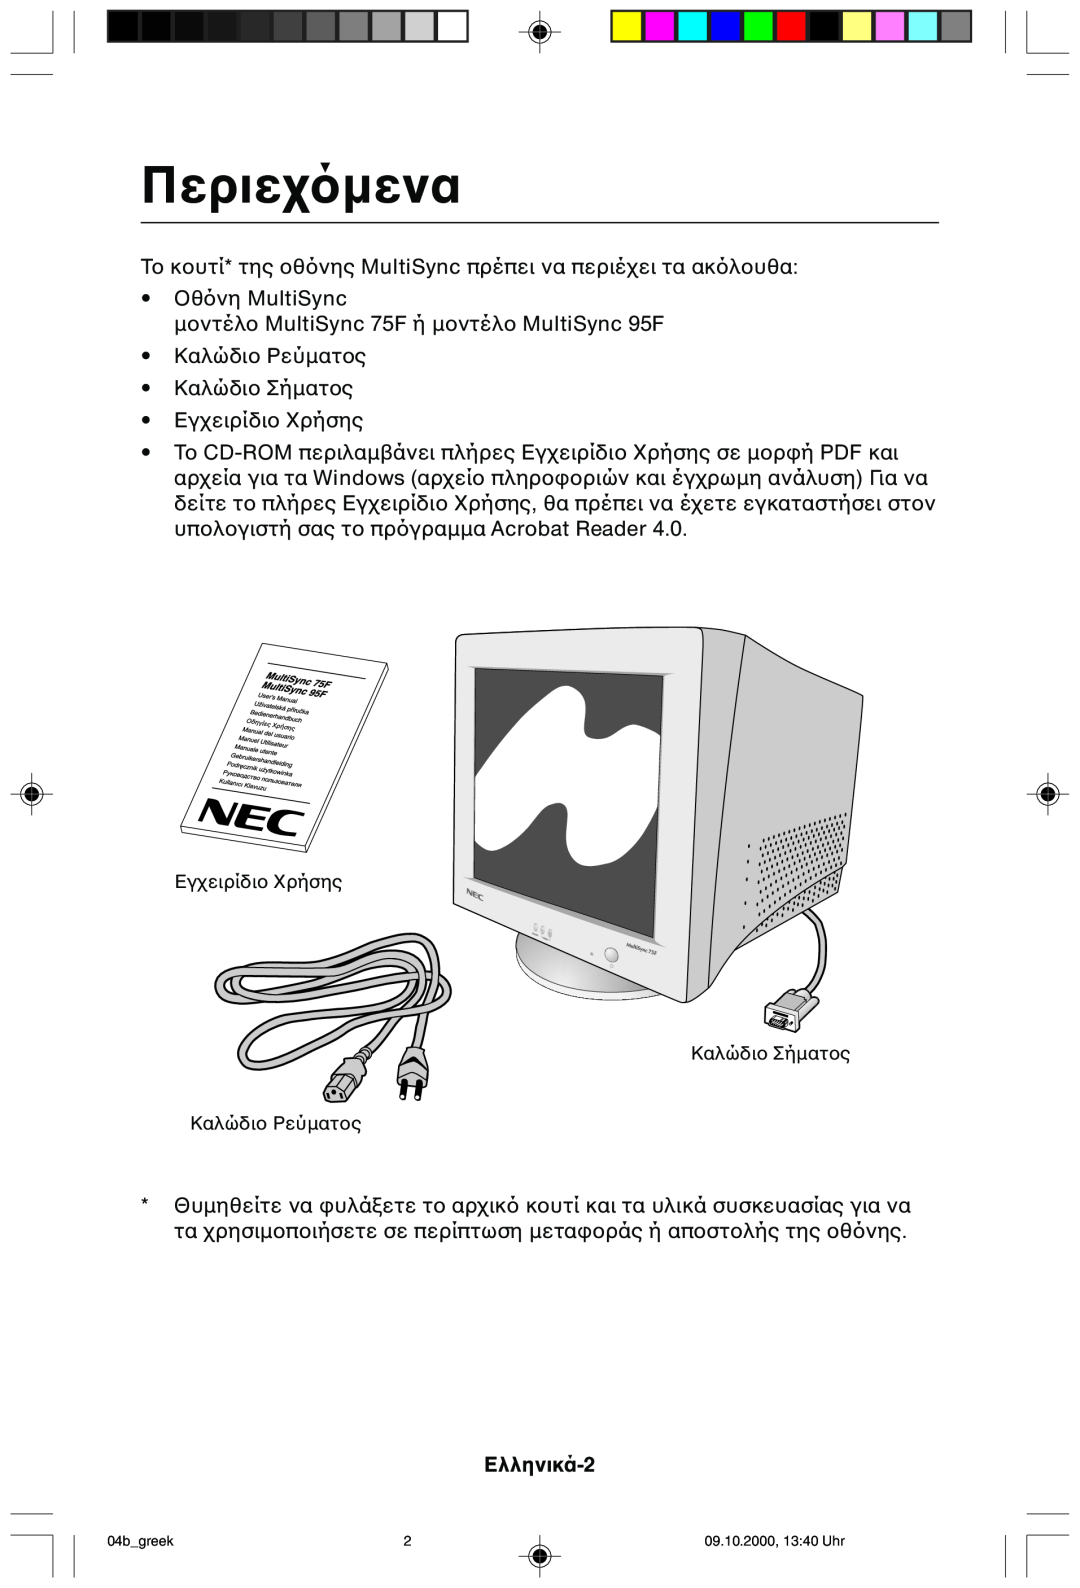 NEC 95F user manual Περιε, Ελληνικά-2, Εγ Καλώδι Καλώδι, 04bgreek, 09.10.2000, 1340 Uhr 